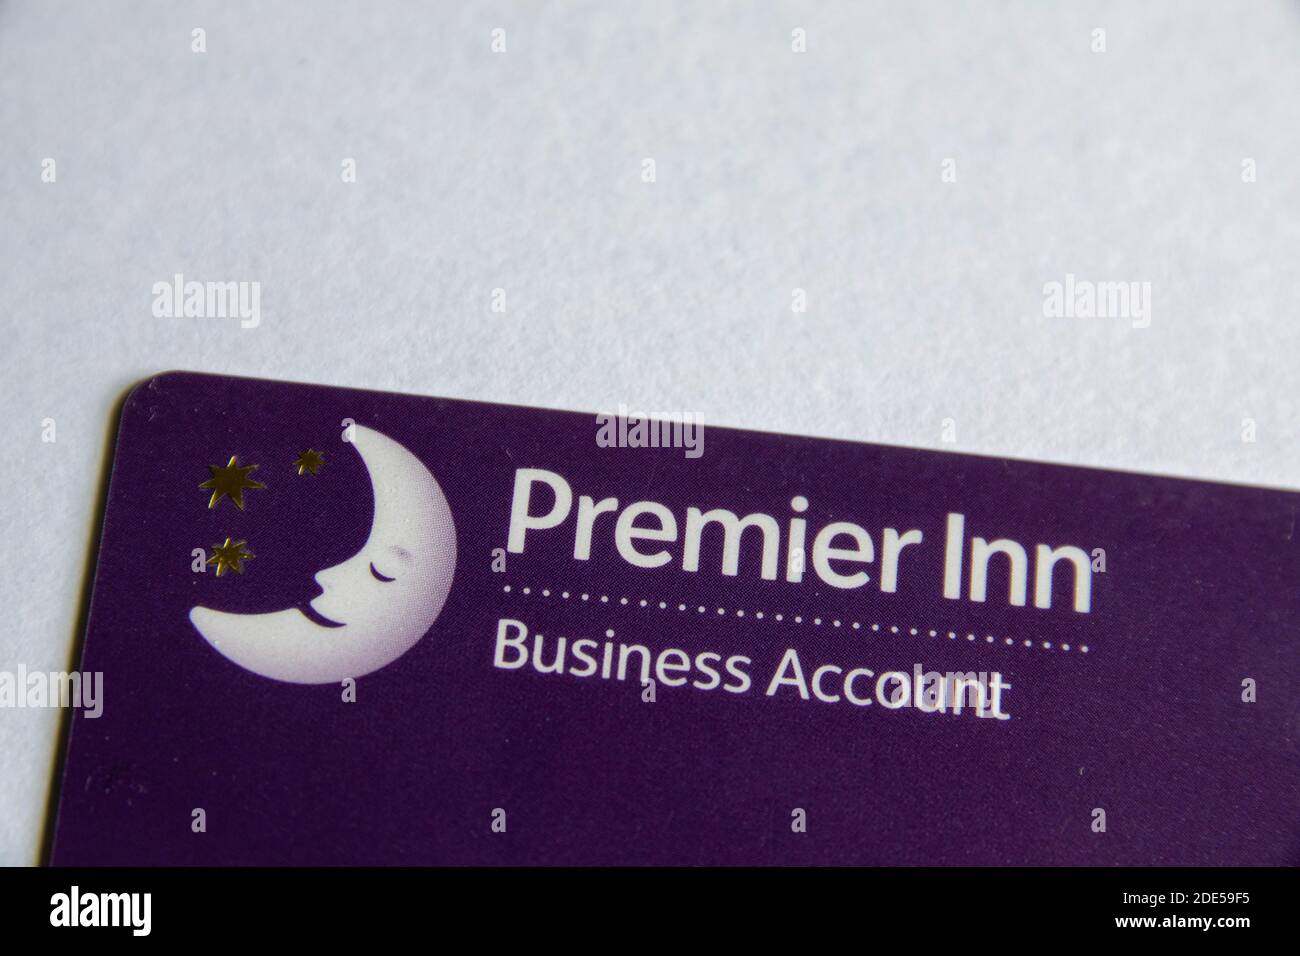 Durham, Regno Unito - 28 maggio 2020: Carta conto Premier Inn Business. La carta consente alle persone che viaggiano per lavoro di addebitare una camera e i pasti alla propria azienda. Foto Stock